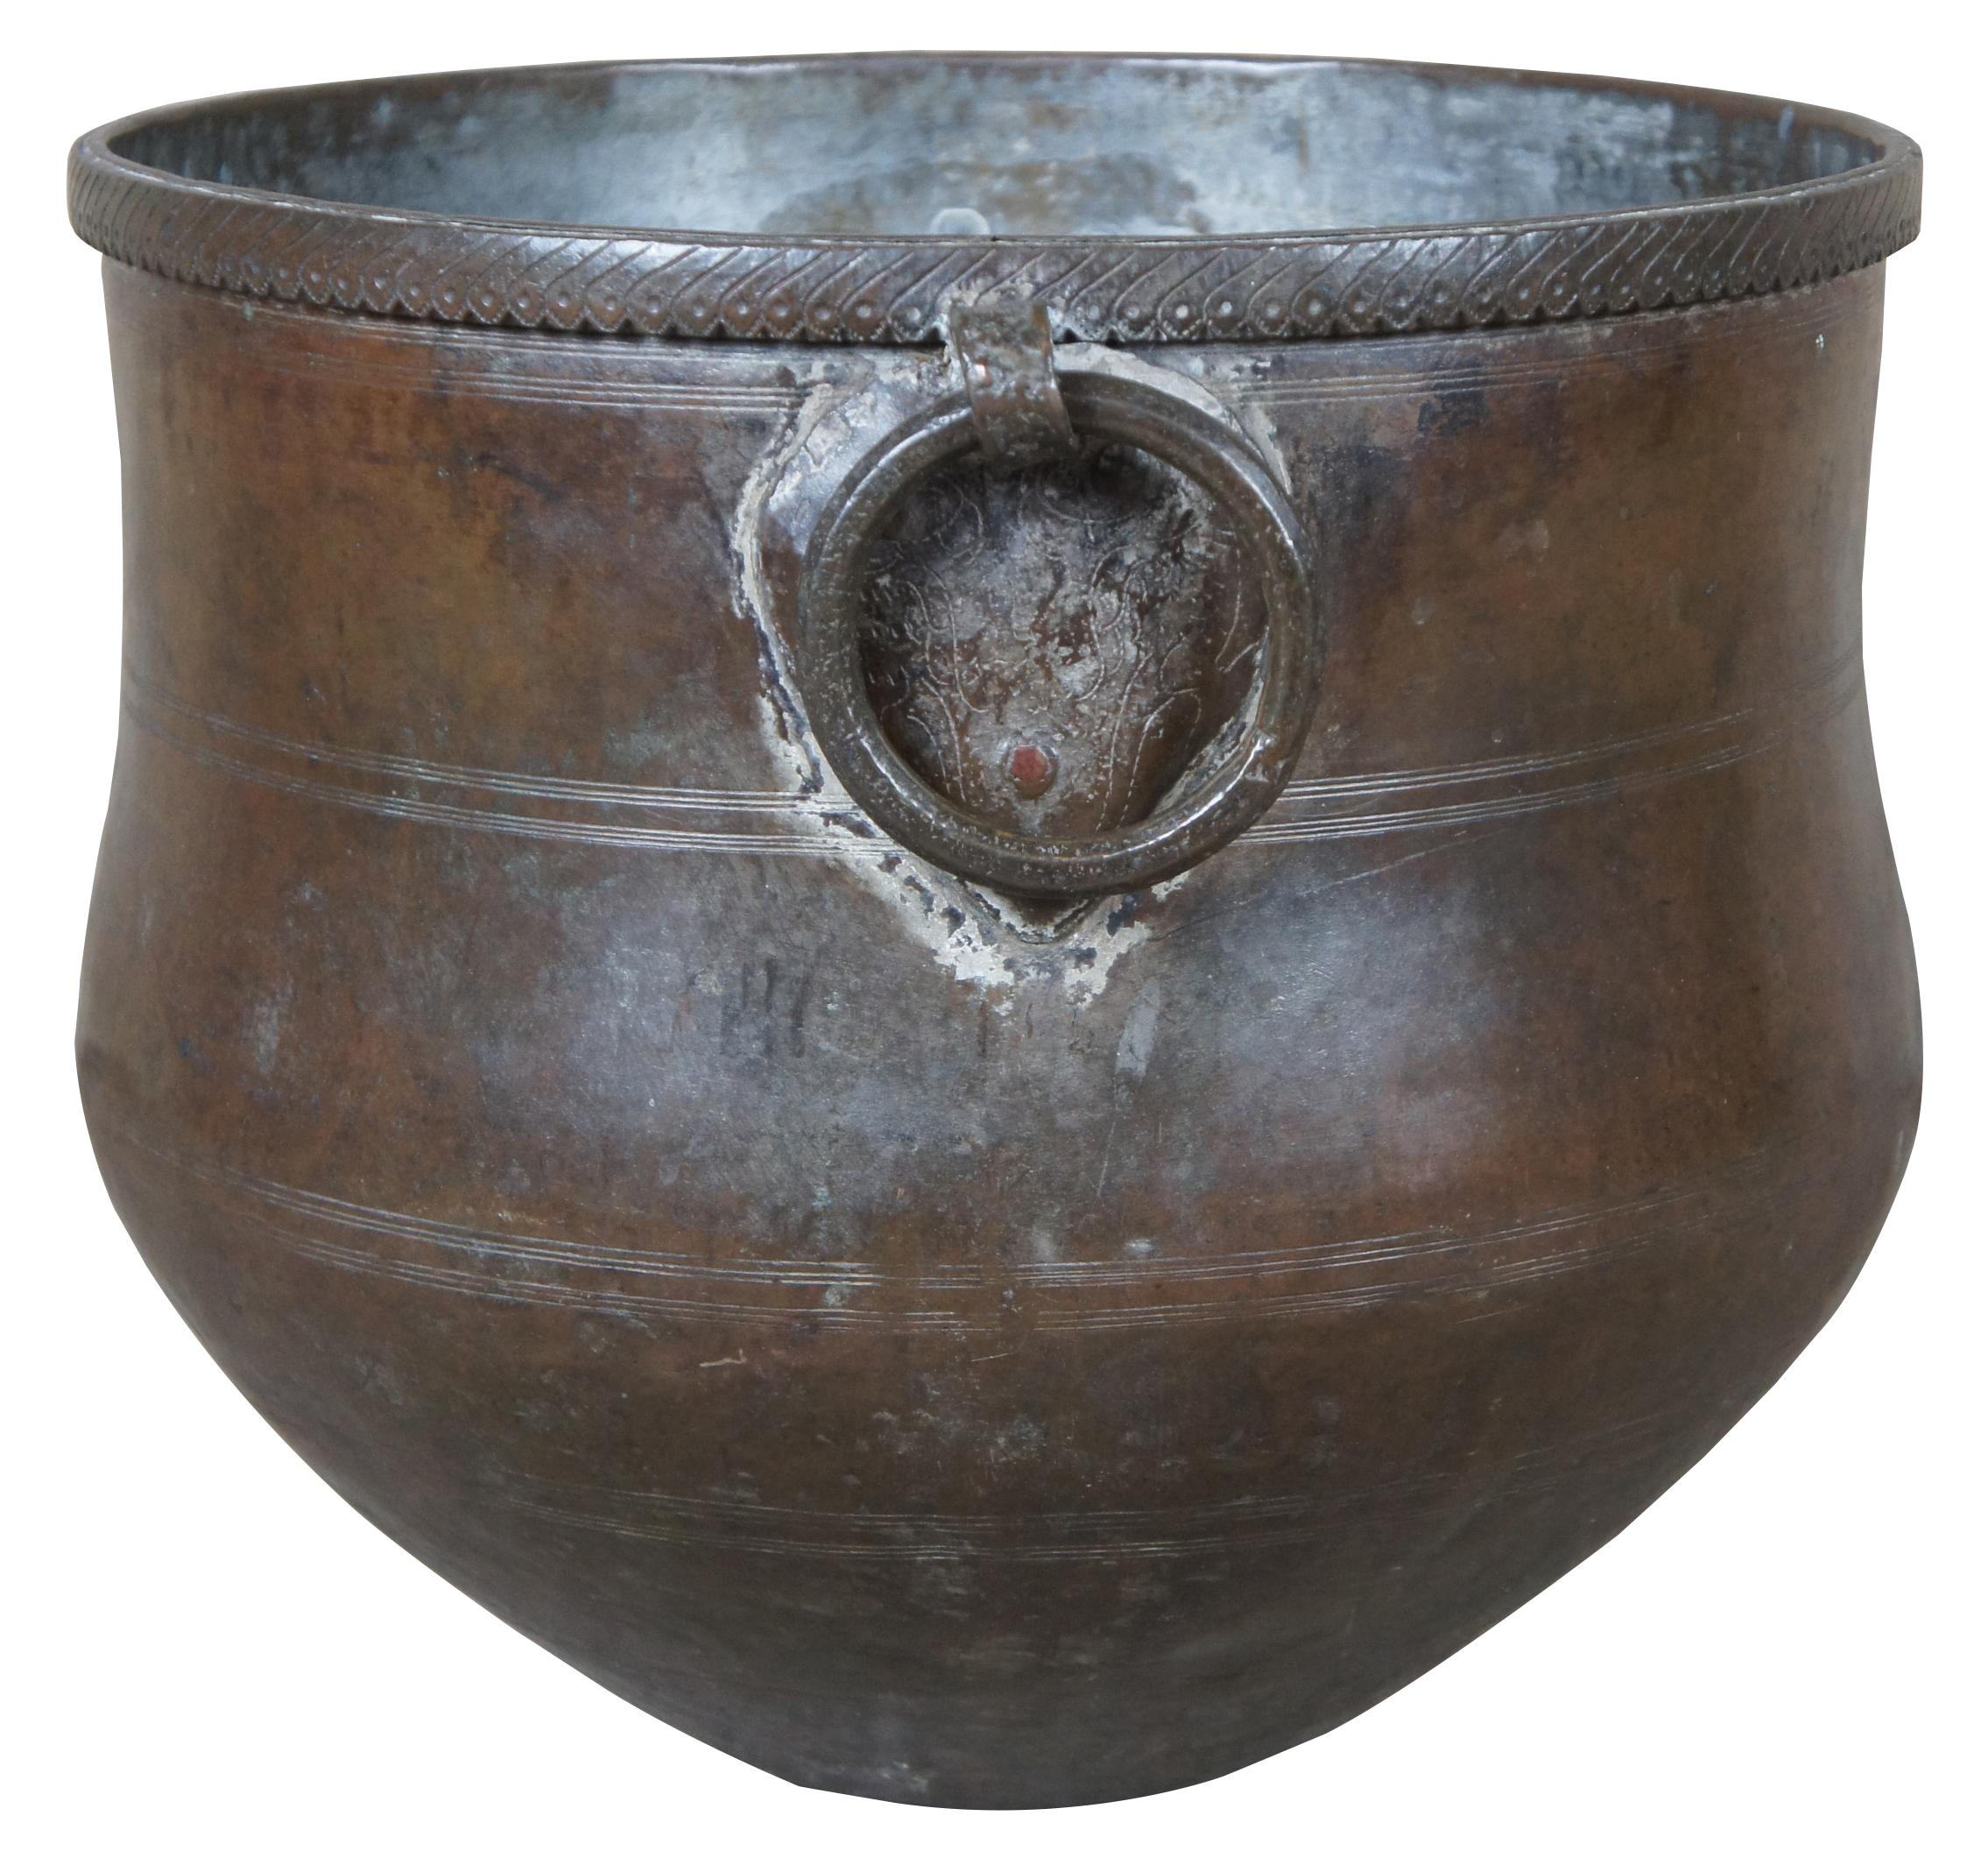 Un monumental récipient en cuivre martelé ou un pot de stockage d'eau. Rond avec une base effilée et des poignées en anneau de fer. Le bord est en fer ciselé. 
   